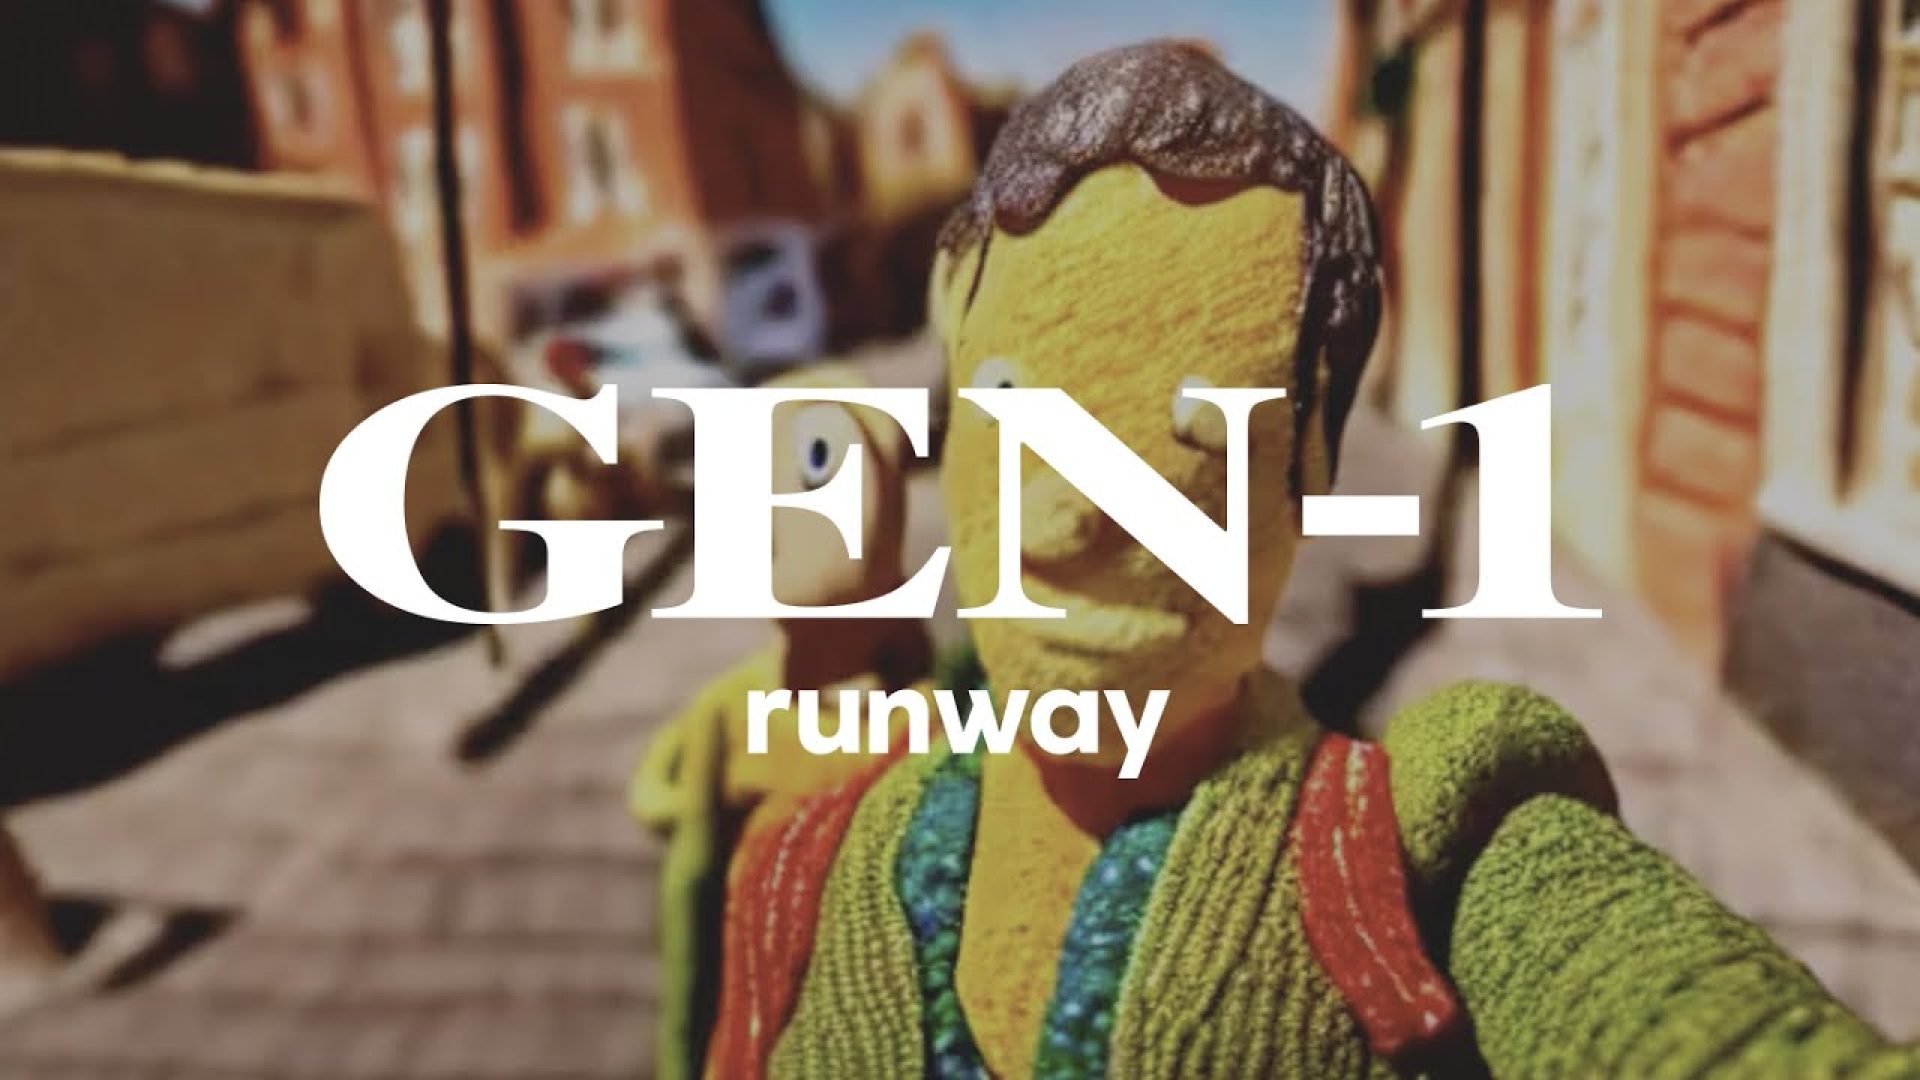 【ویدیو】Runway از هوش مصنوعی Gen-1 برای ساخت ویدیو رونمایی کرد